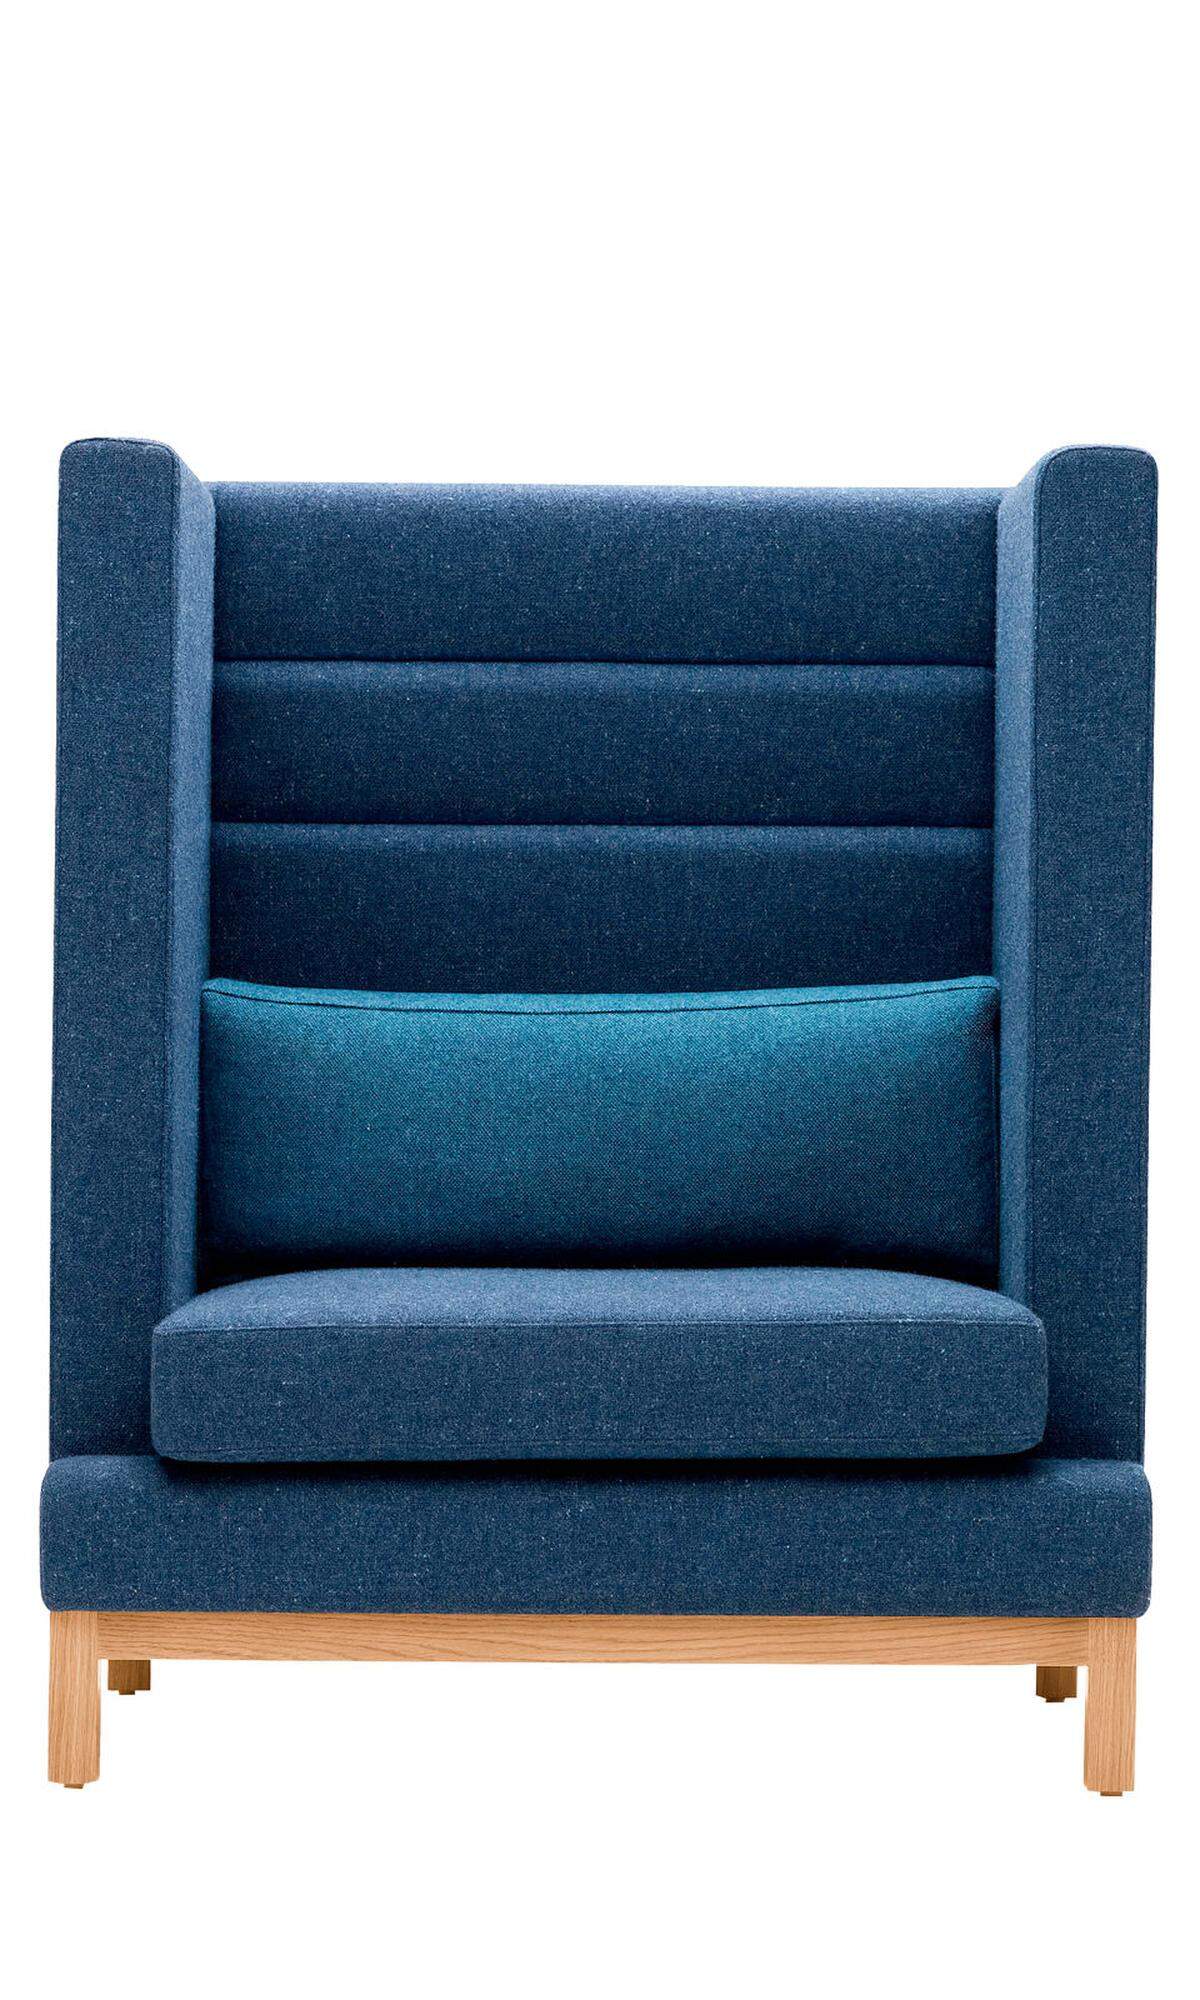 Weil wir Blau so gerne haben, machen wir es uns gleich bequem auf dem Stuhl von Arthur Boss, www.bossdesign.com